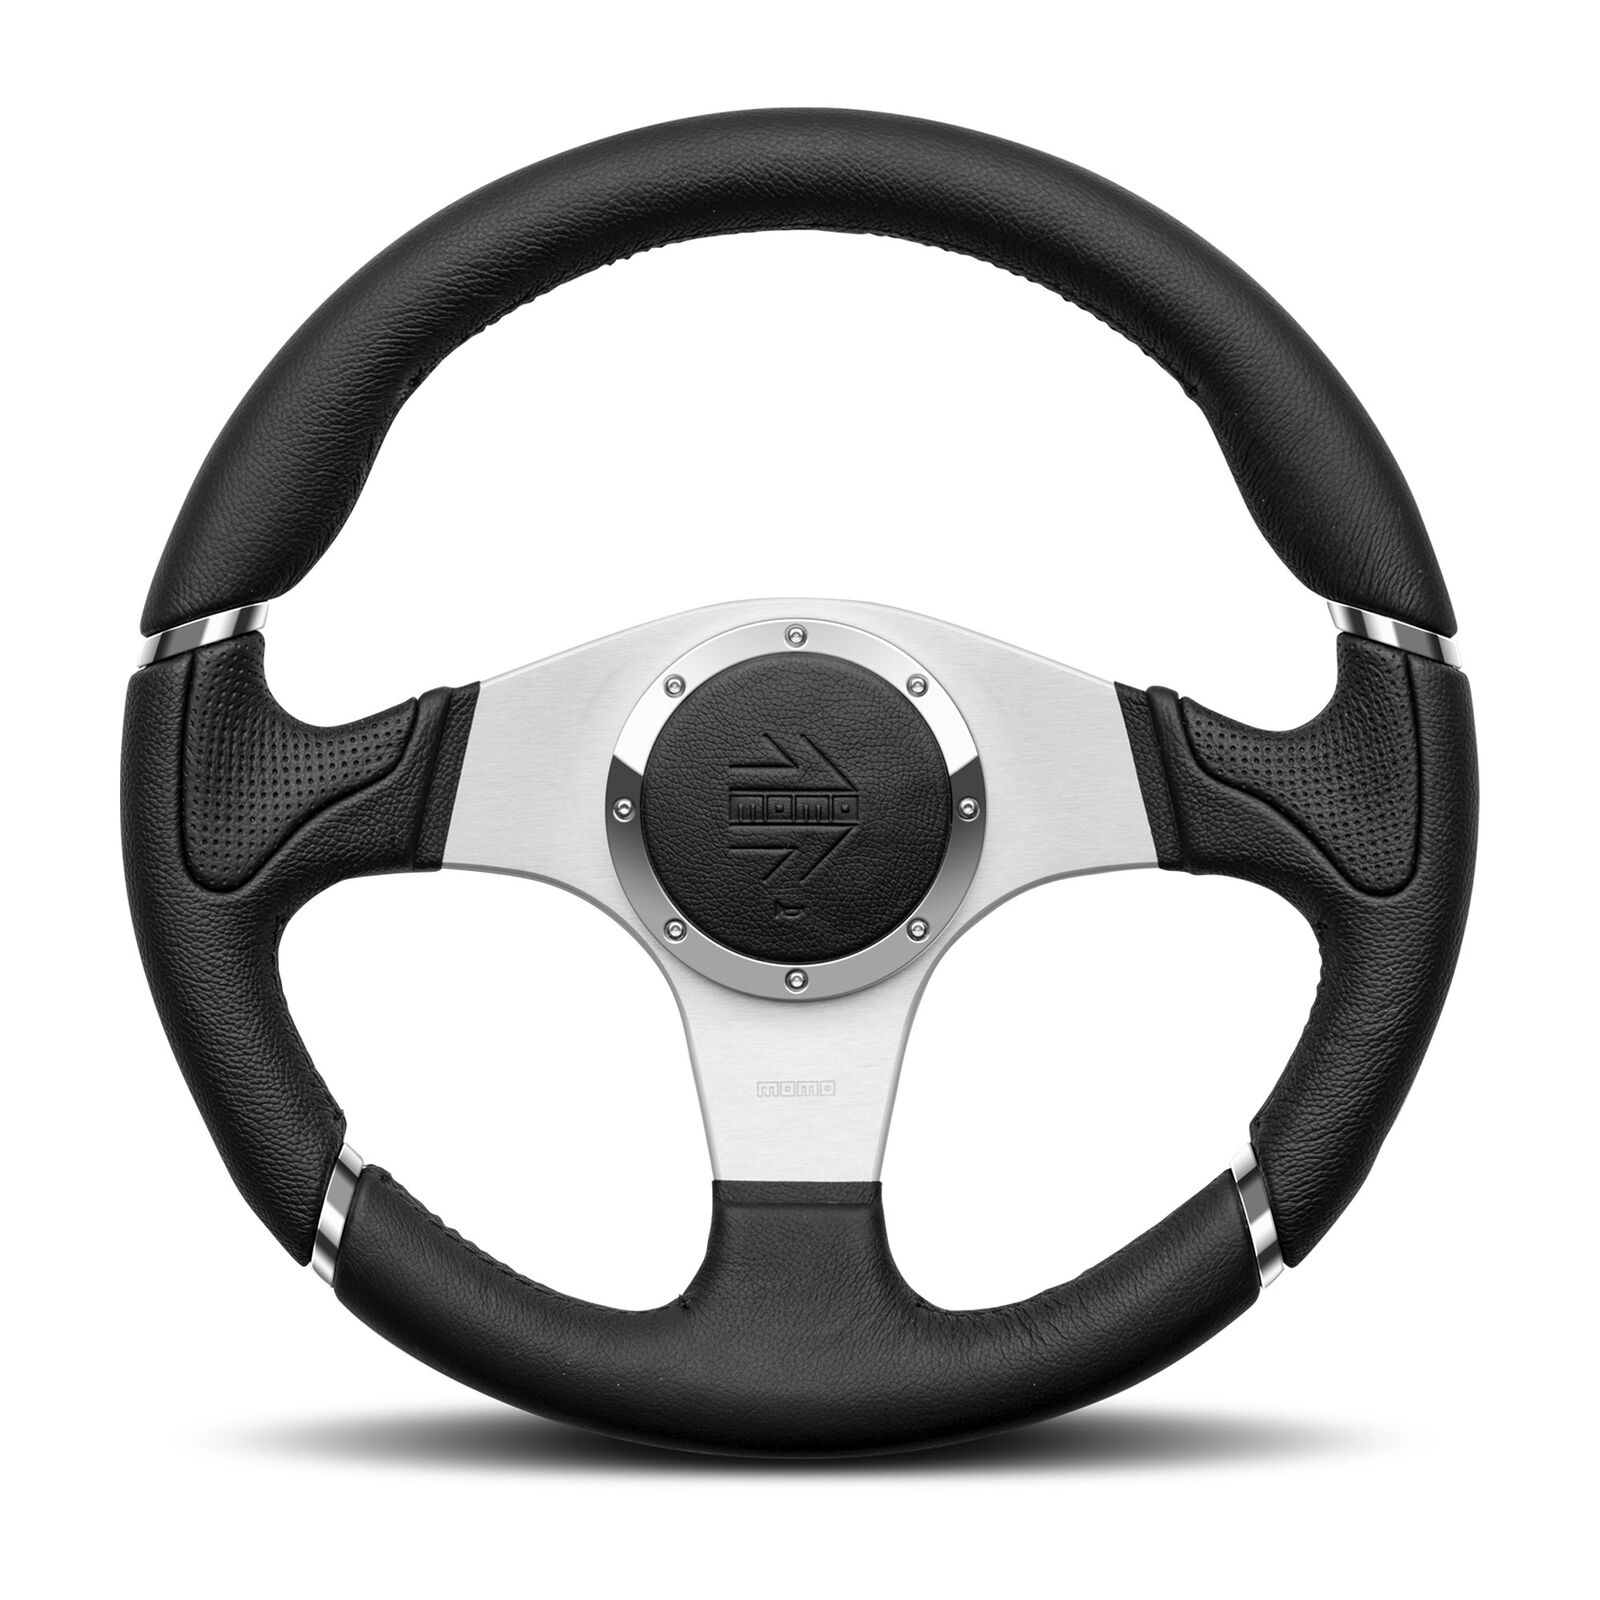 MOMO Motorsport Millennium Steering Wheel Black Leather Grip, 350mm - MIL35BK1P